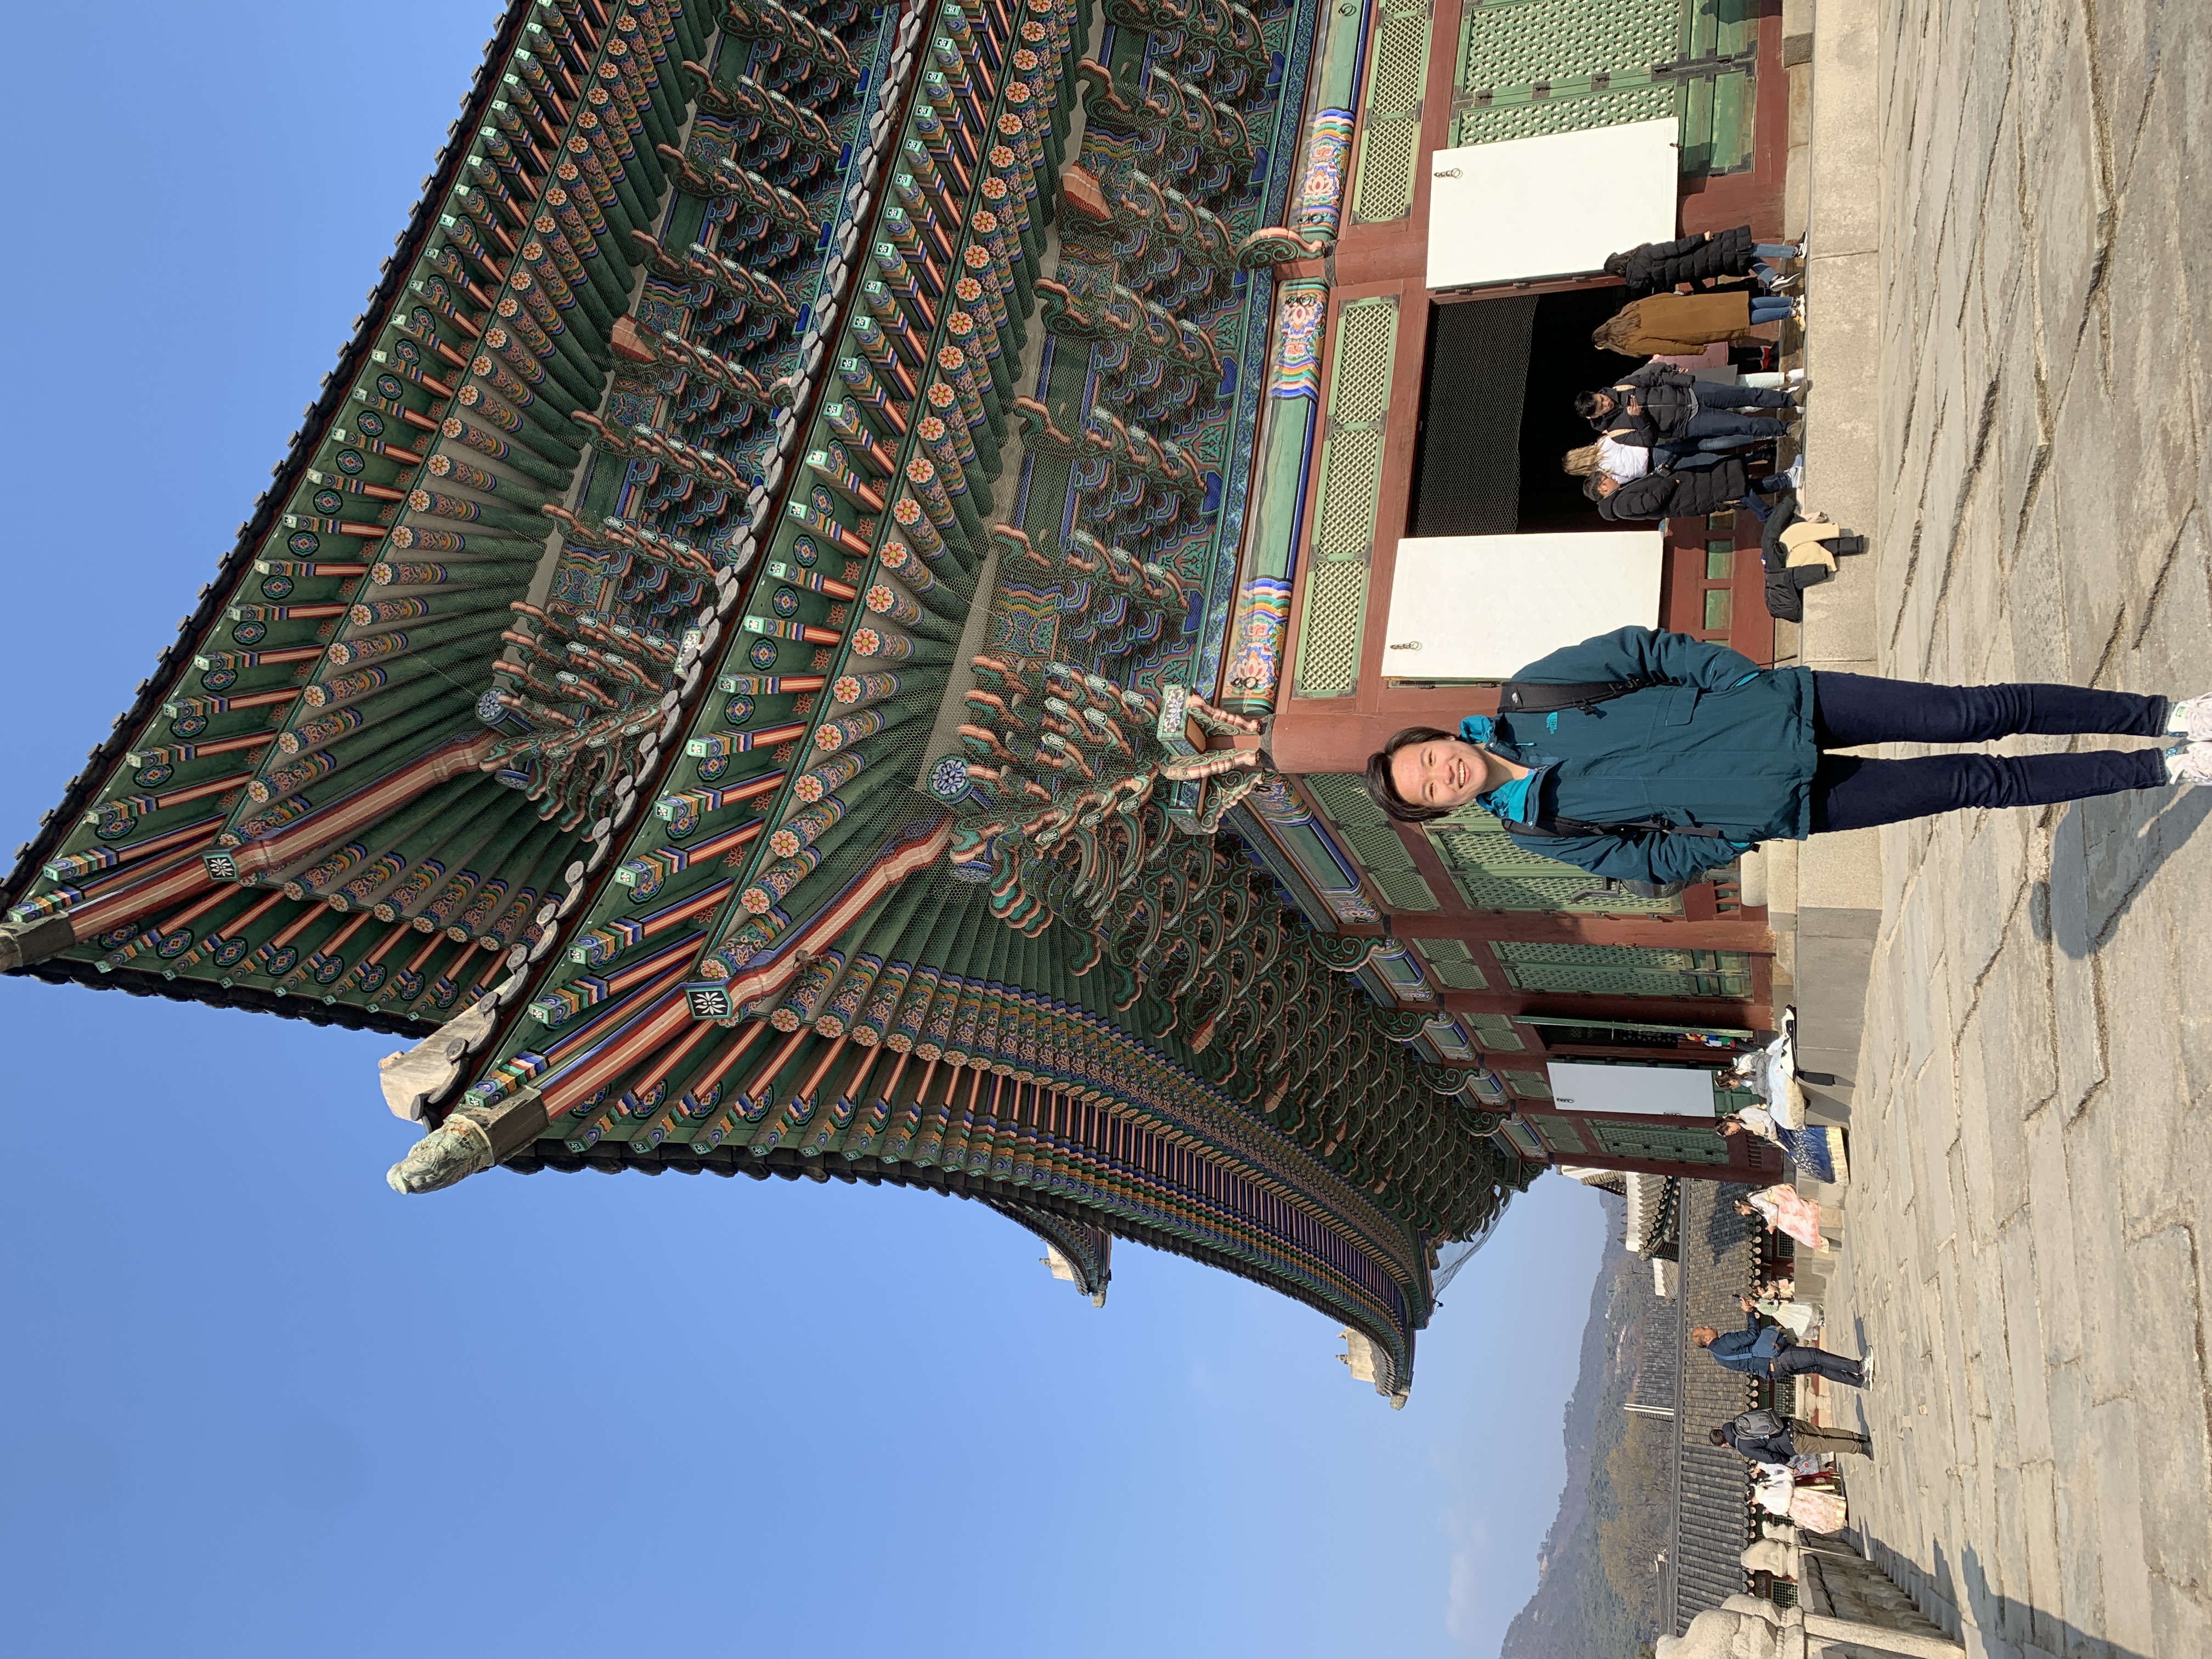 Jackie Shi visiting Gyeongbokgung Palace in Seoul, South Korea.